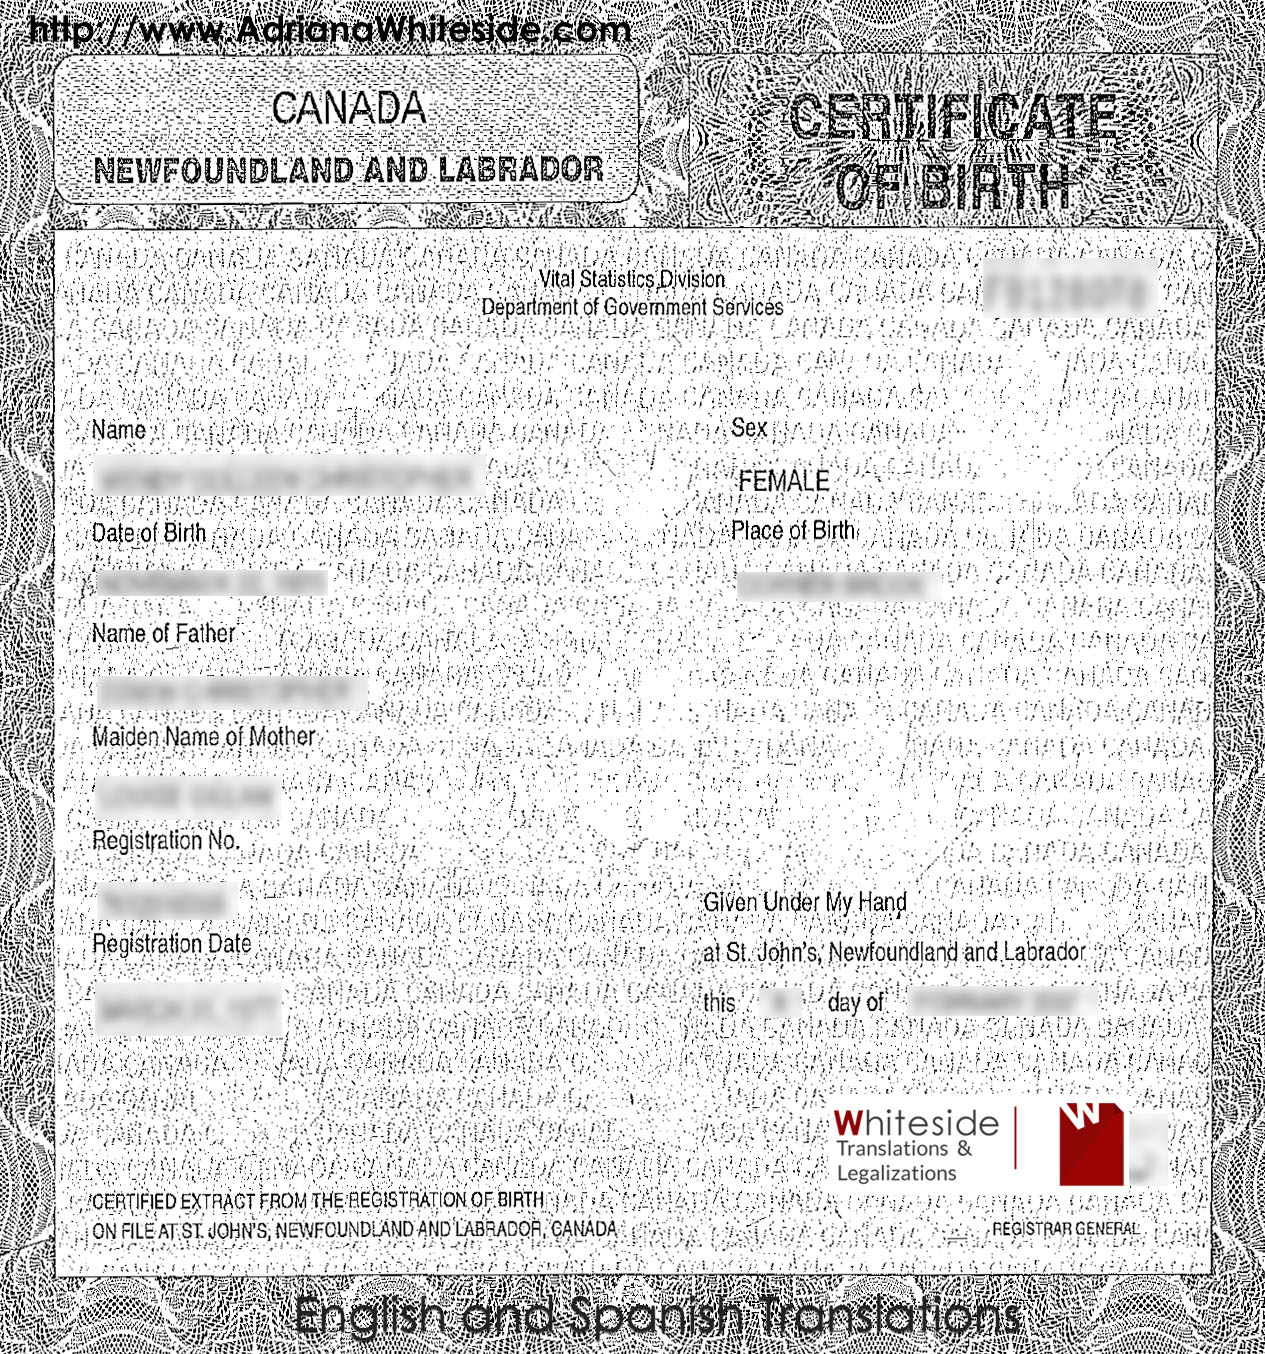 Canada - Birth Certificate